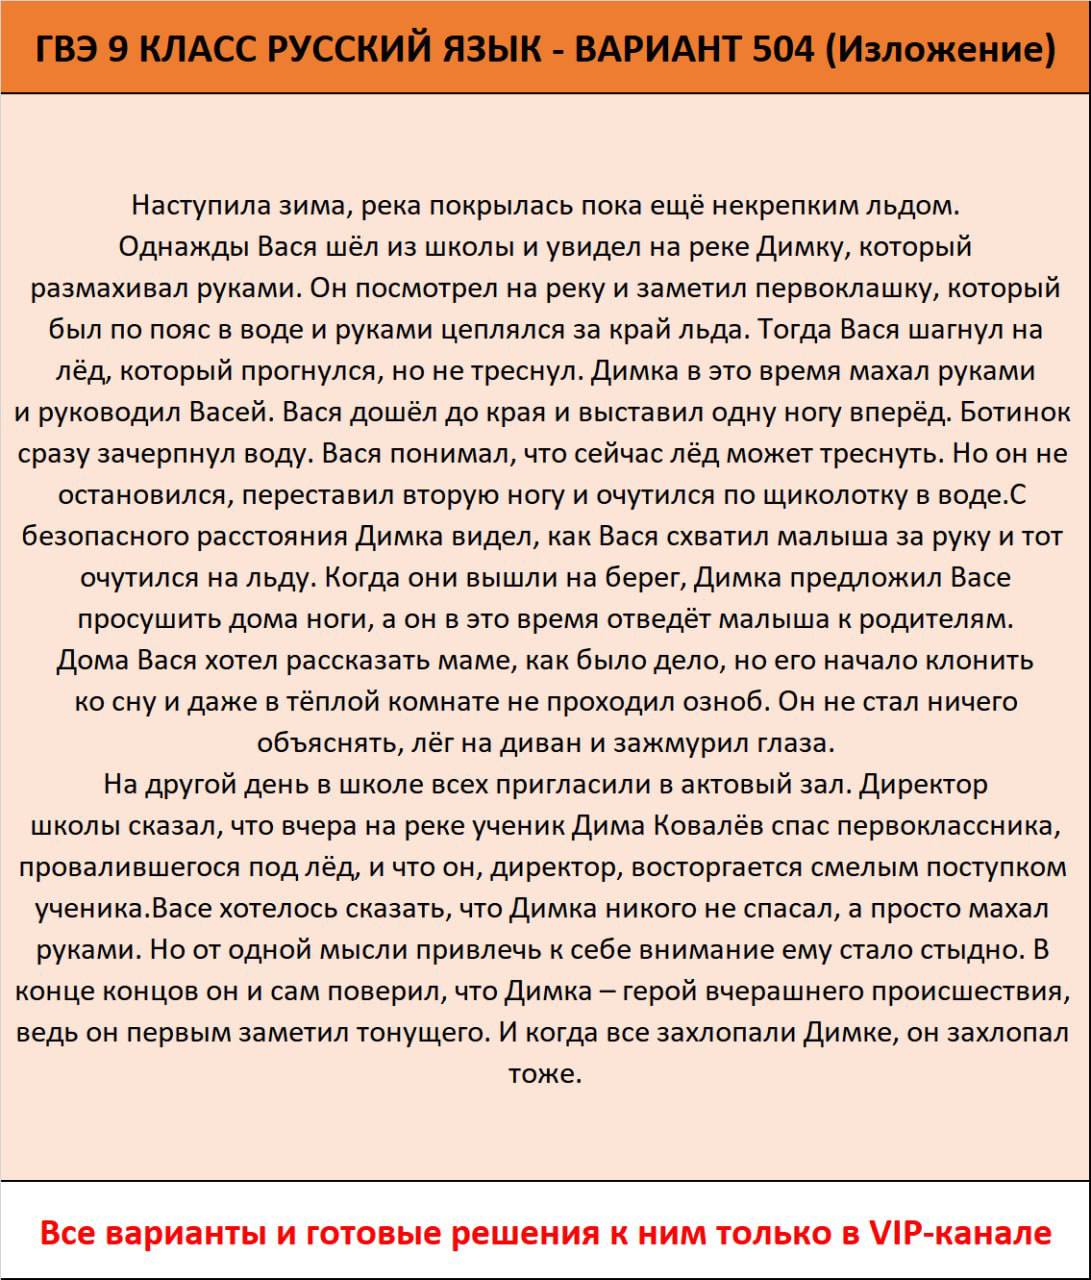 Огэ по русскому языку ответы телеграмм фото 26